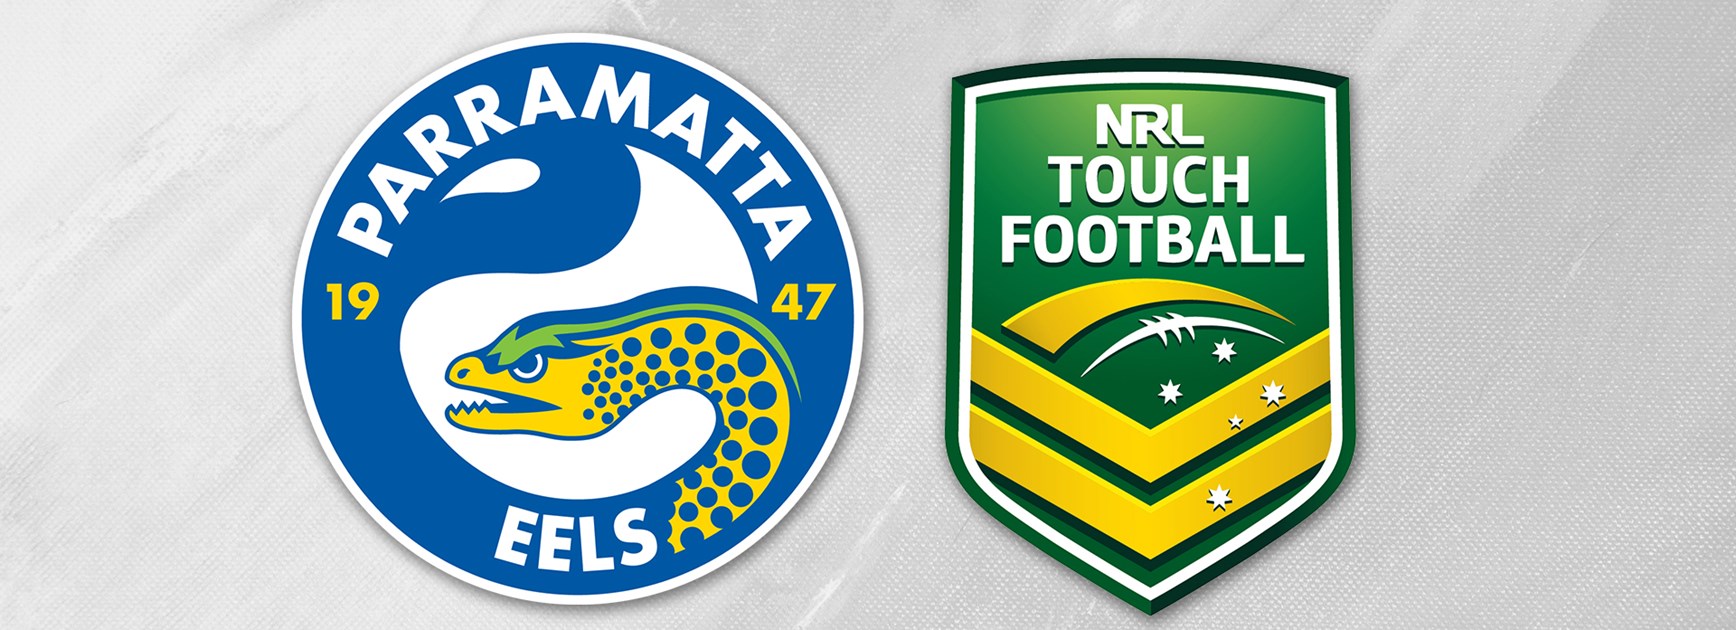 Parramatta Eels Club announce NRL Touch Football team